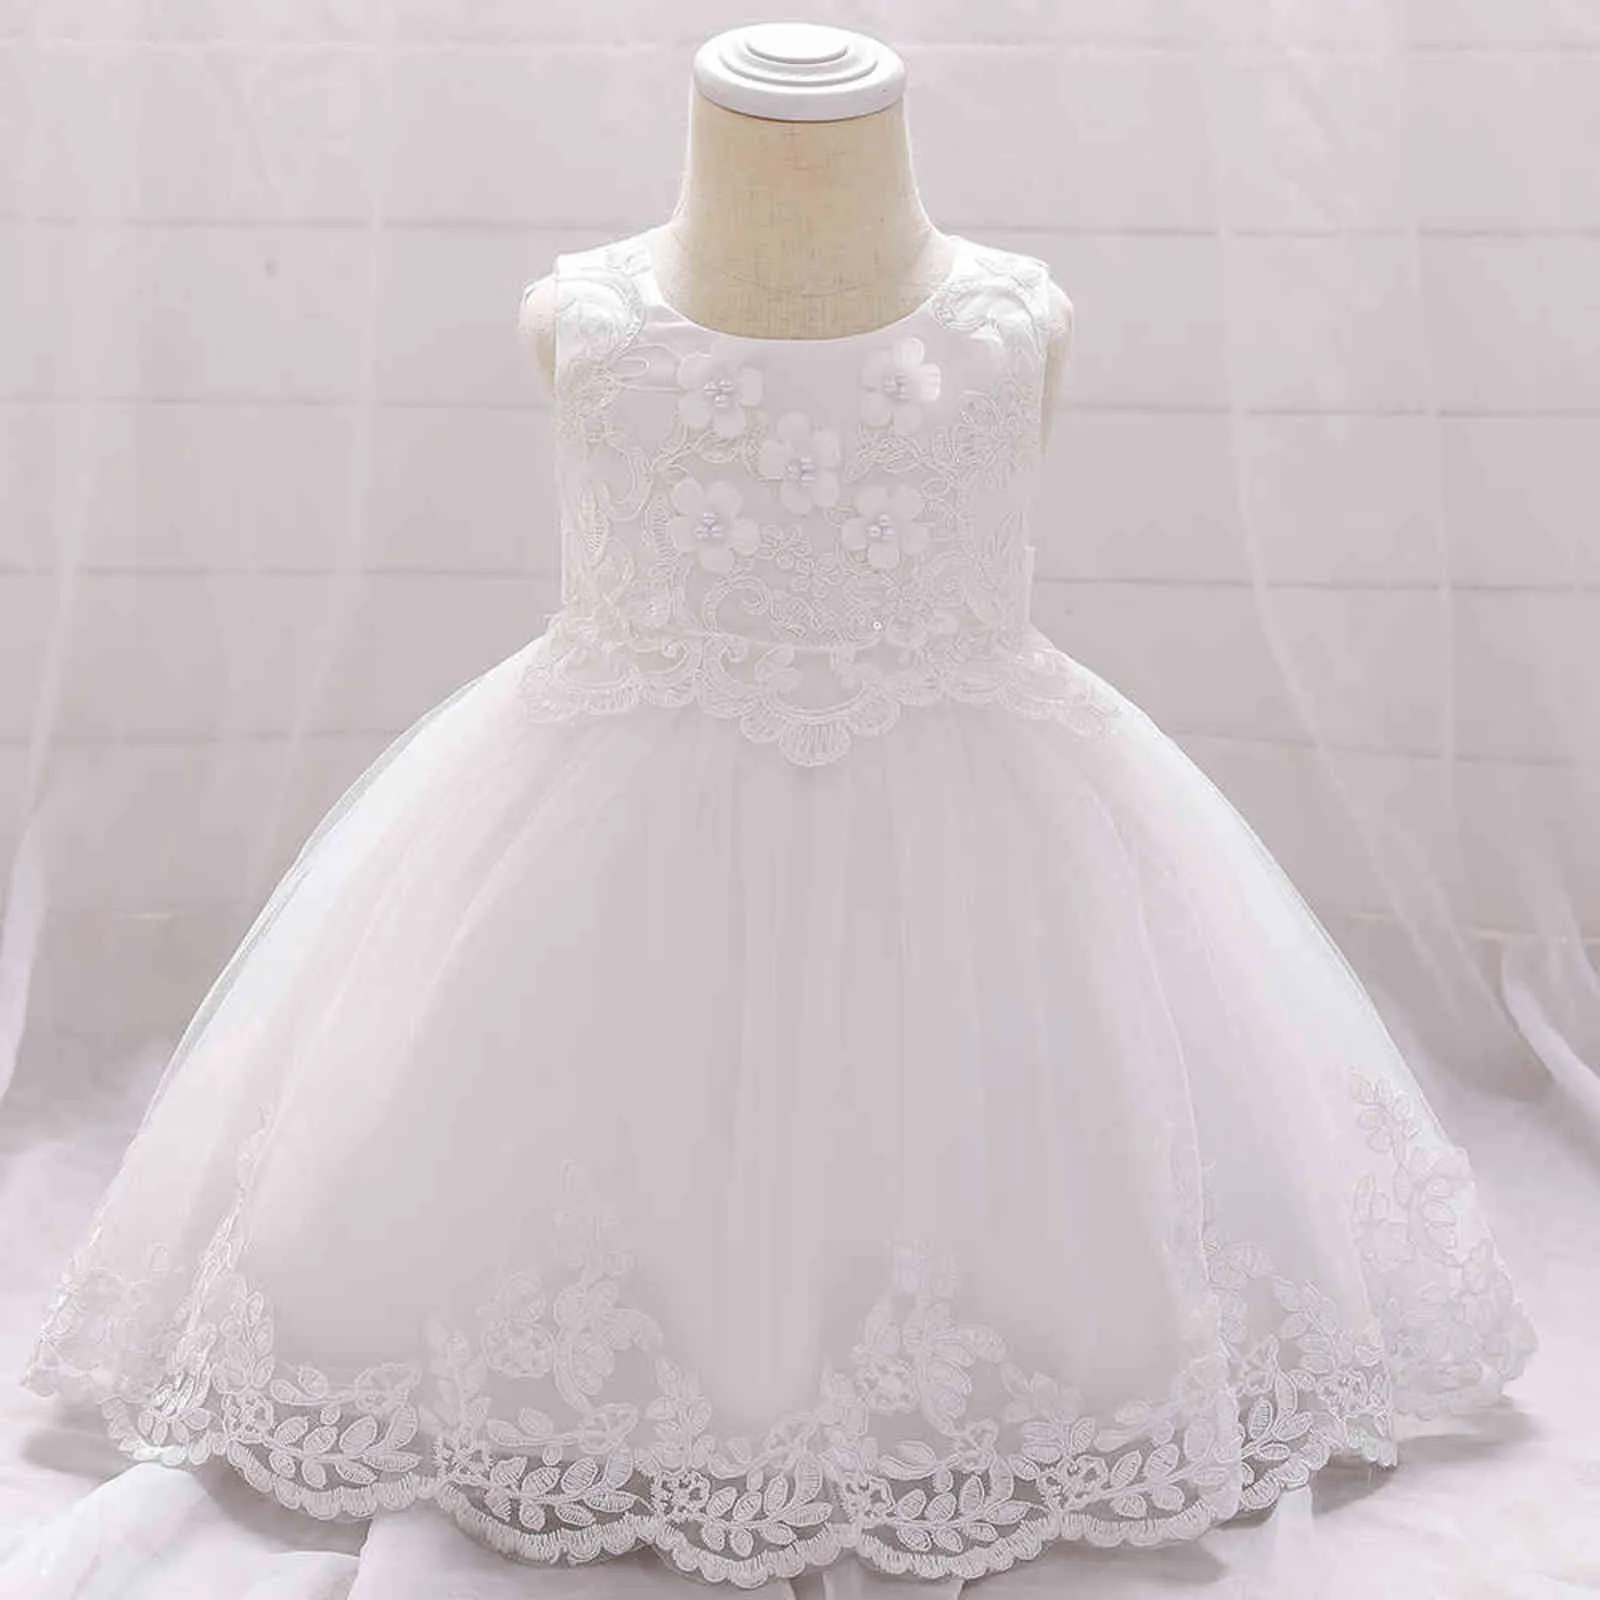 2021 bébé fille robes d'été applique dentelle robe infantile bébé fille princesse robe enfant en bas âge fête d'anniversaire robe de mariée vêtements G1129